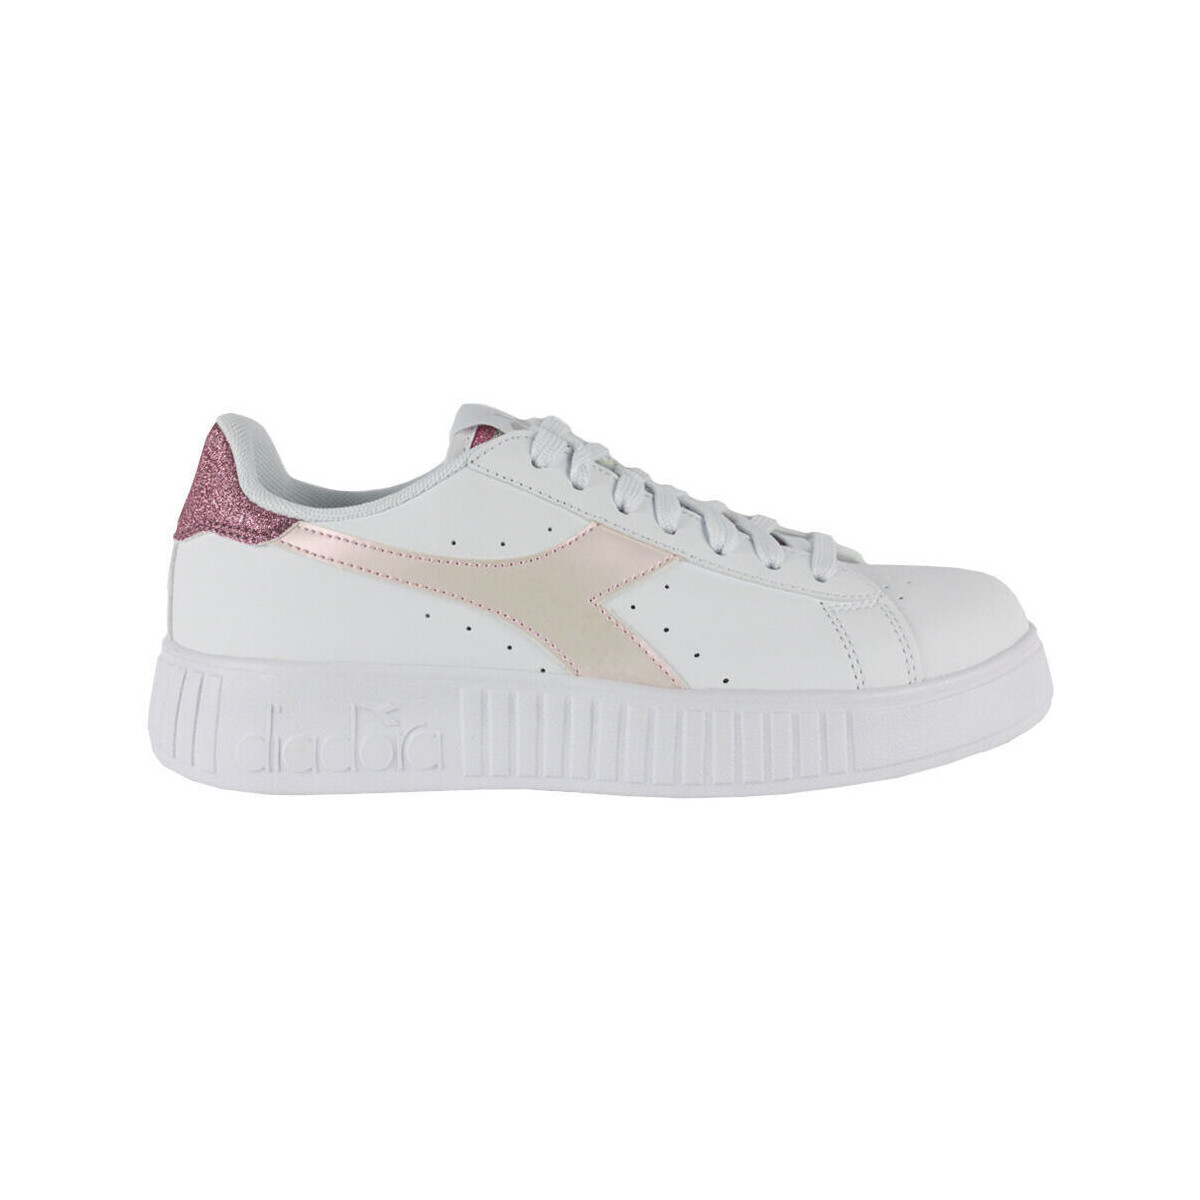 Schoenen Dames Sneakers Diadora 101.178338 01 C3113 White/Pink lady Wit